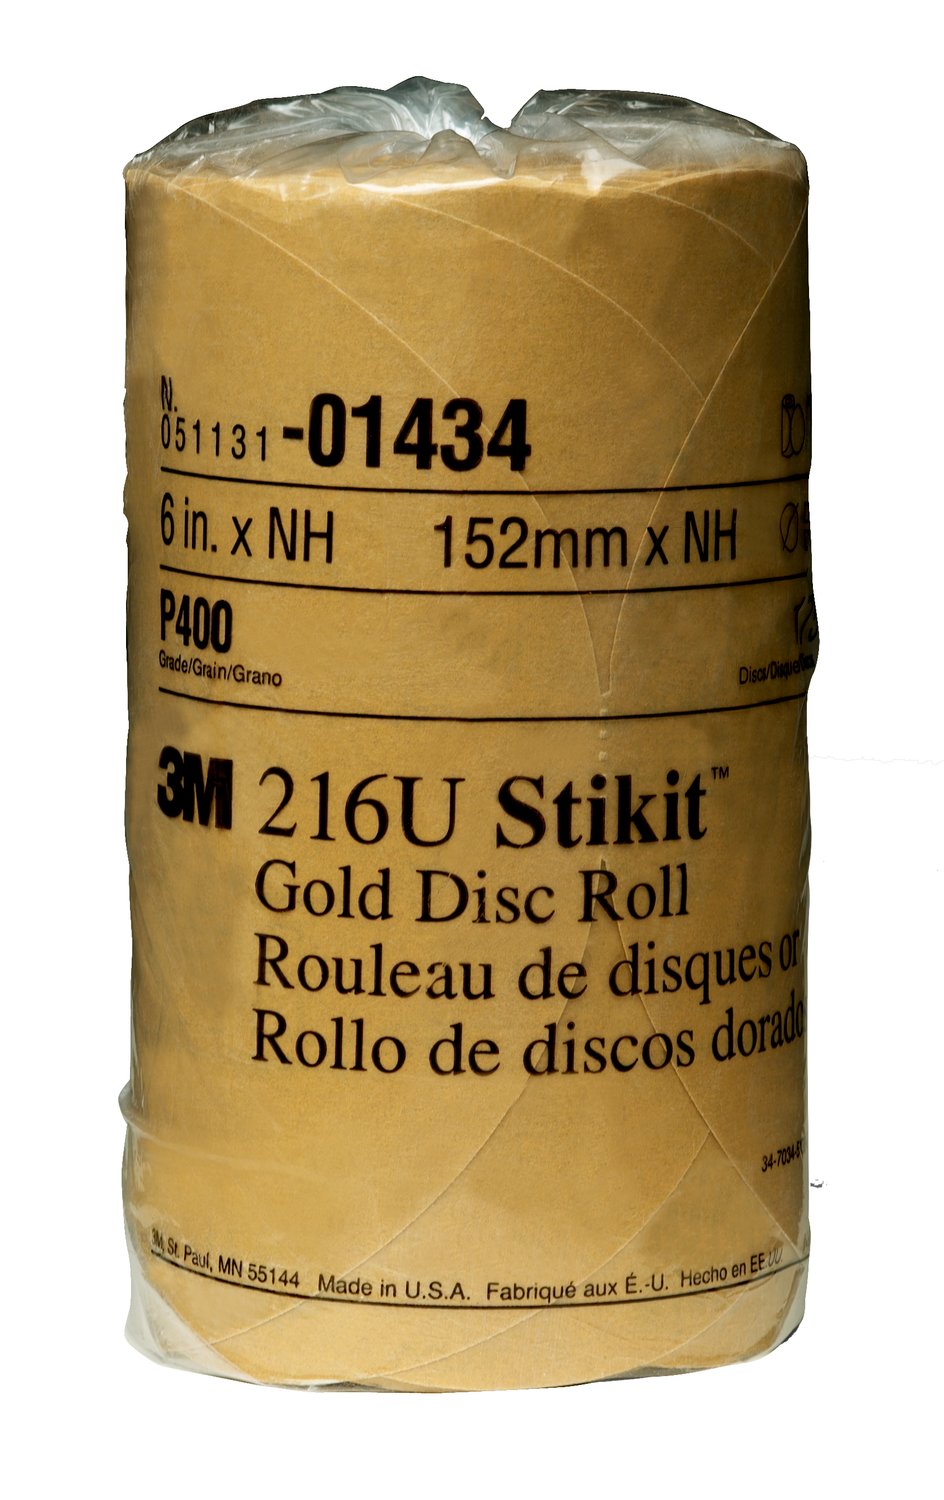 7000119681 - 3M Stikit Gold Disc Roll, 01434, 6 in, P400, 175 discs per roll, 6
rolls per case